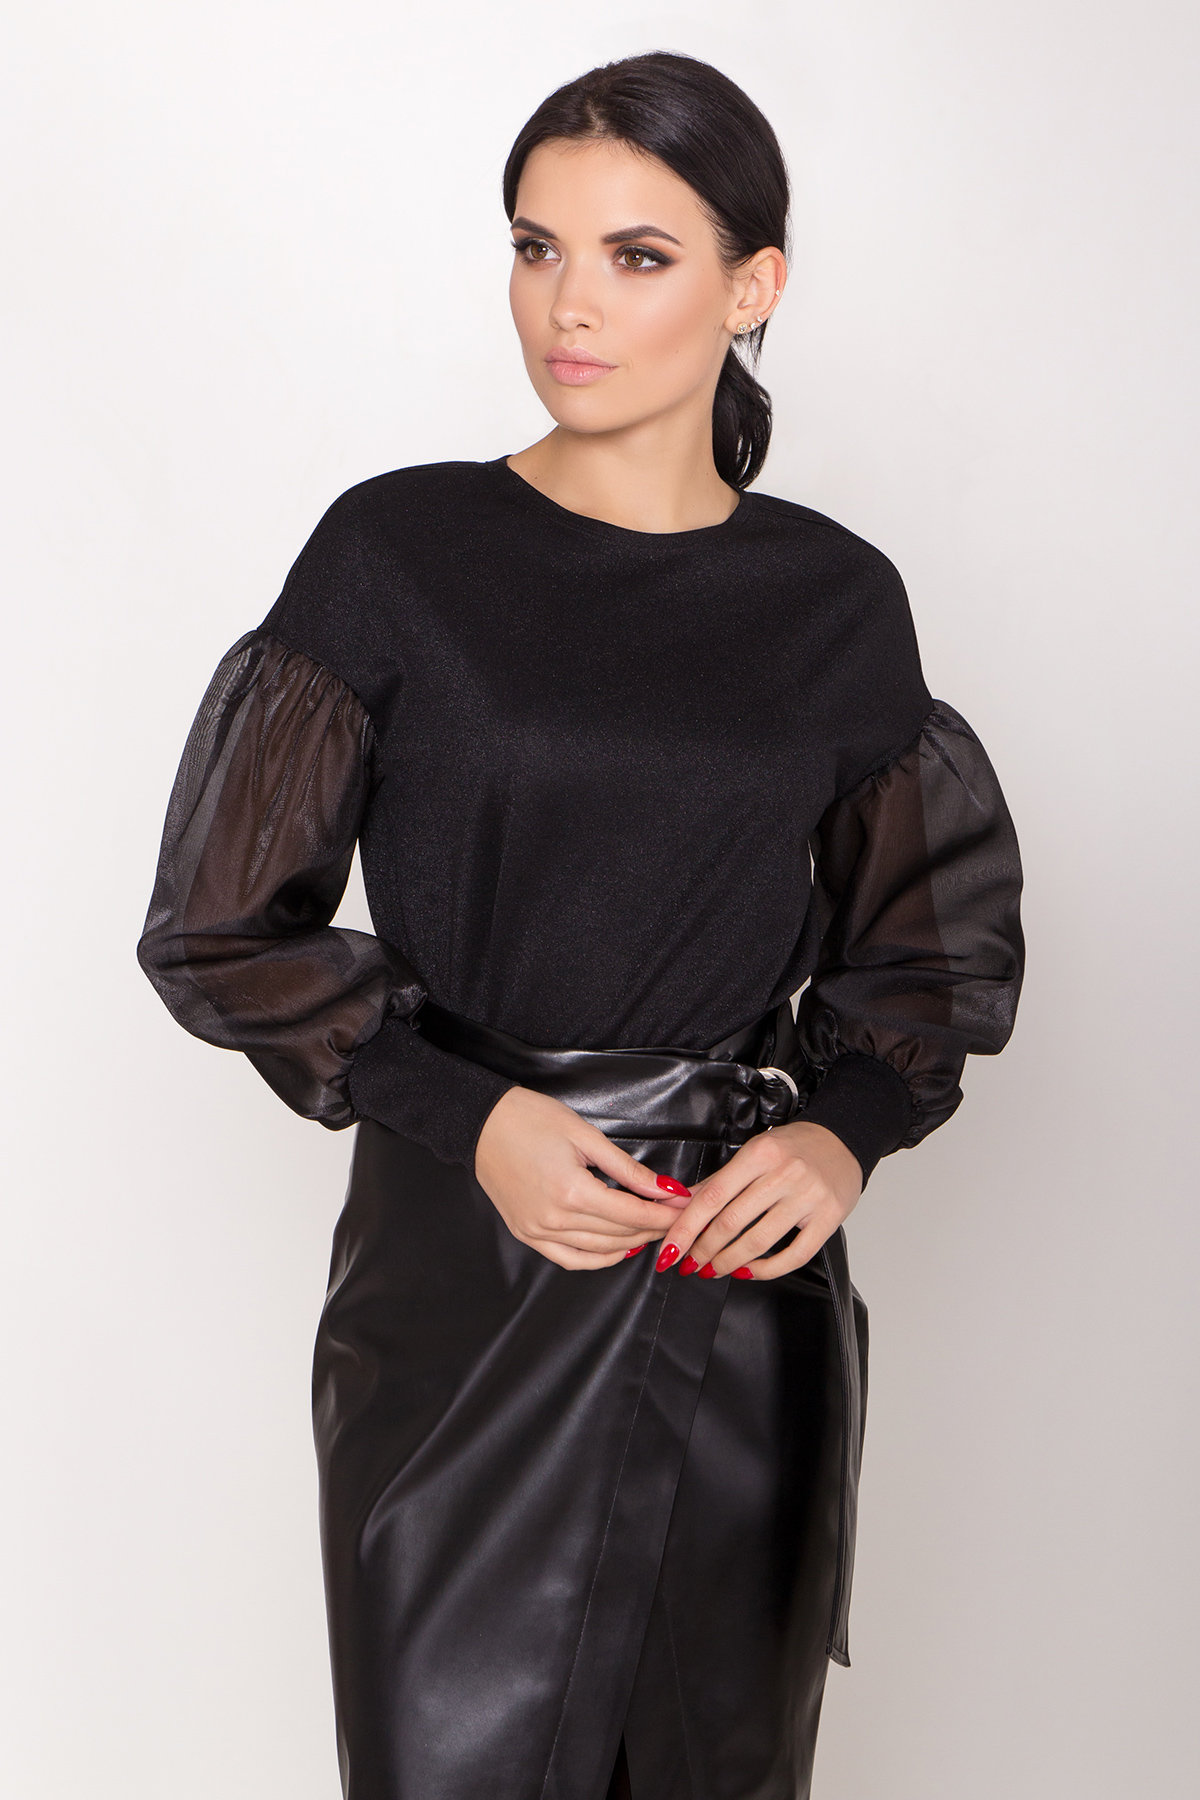 Блуза с актуальными рукавами из органзы Виго 8350 АРТ. 44519 Цвет: Черный - фото 5, интернет магазин tm-modus.ru